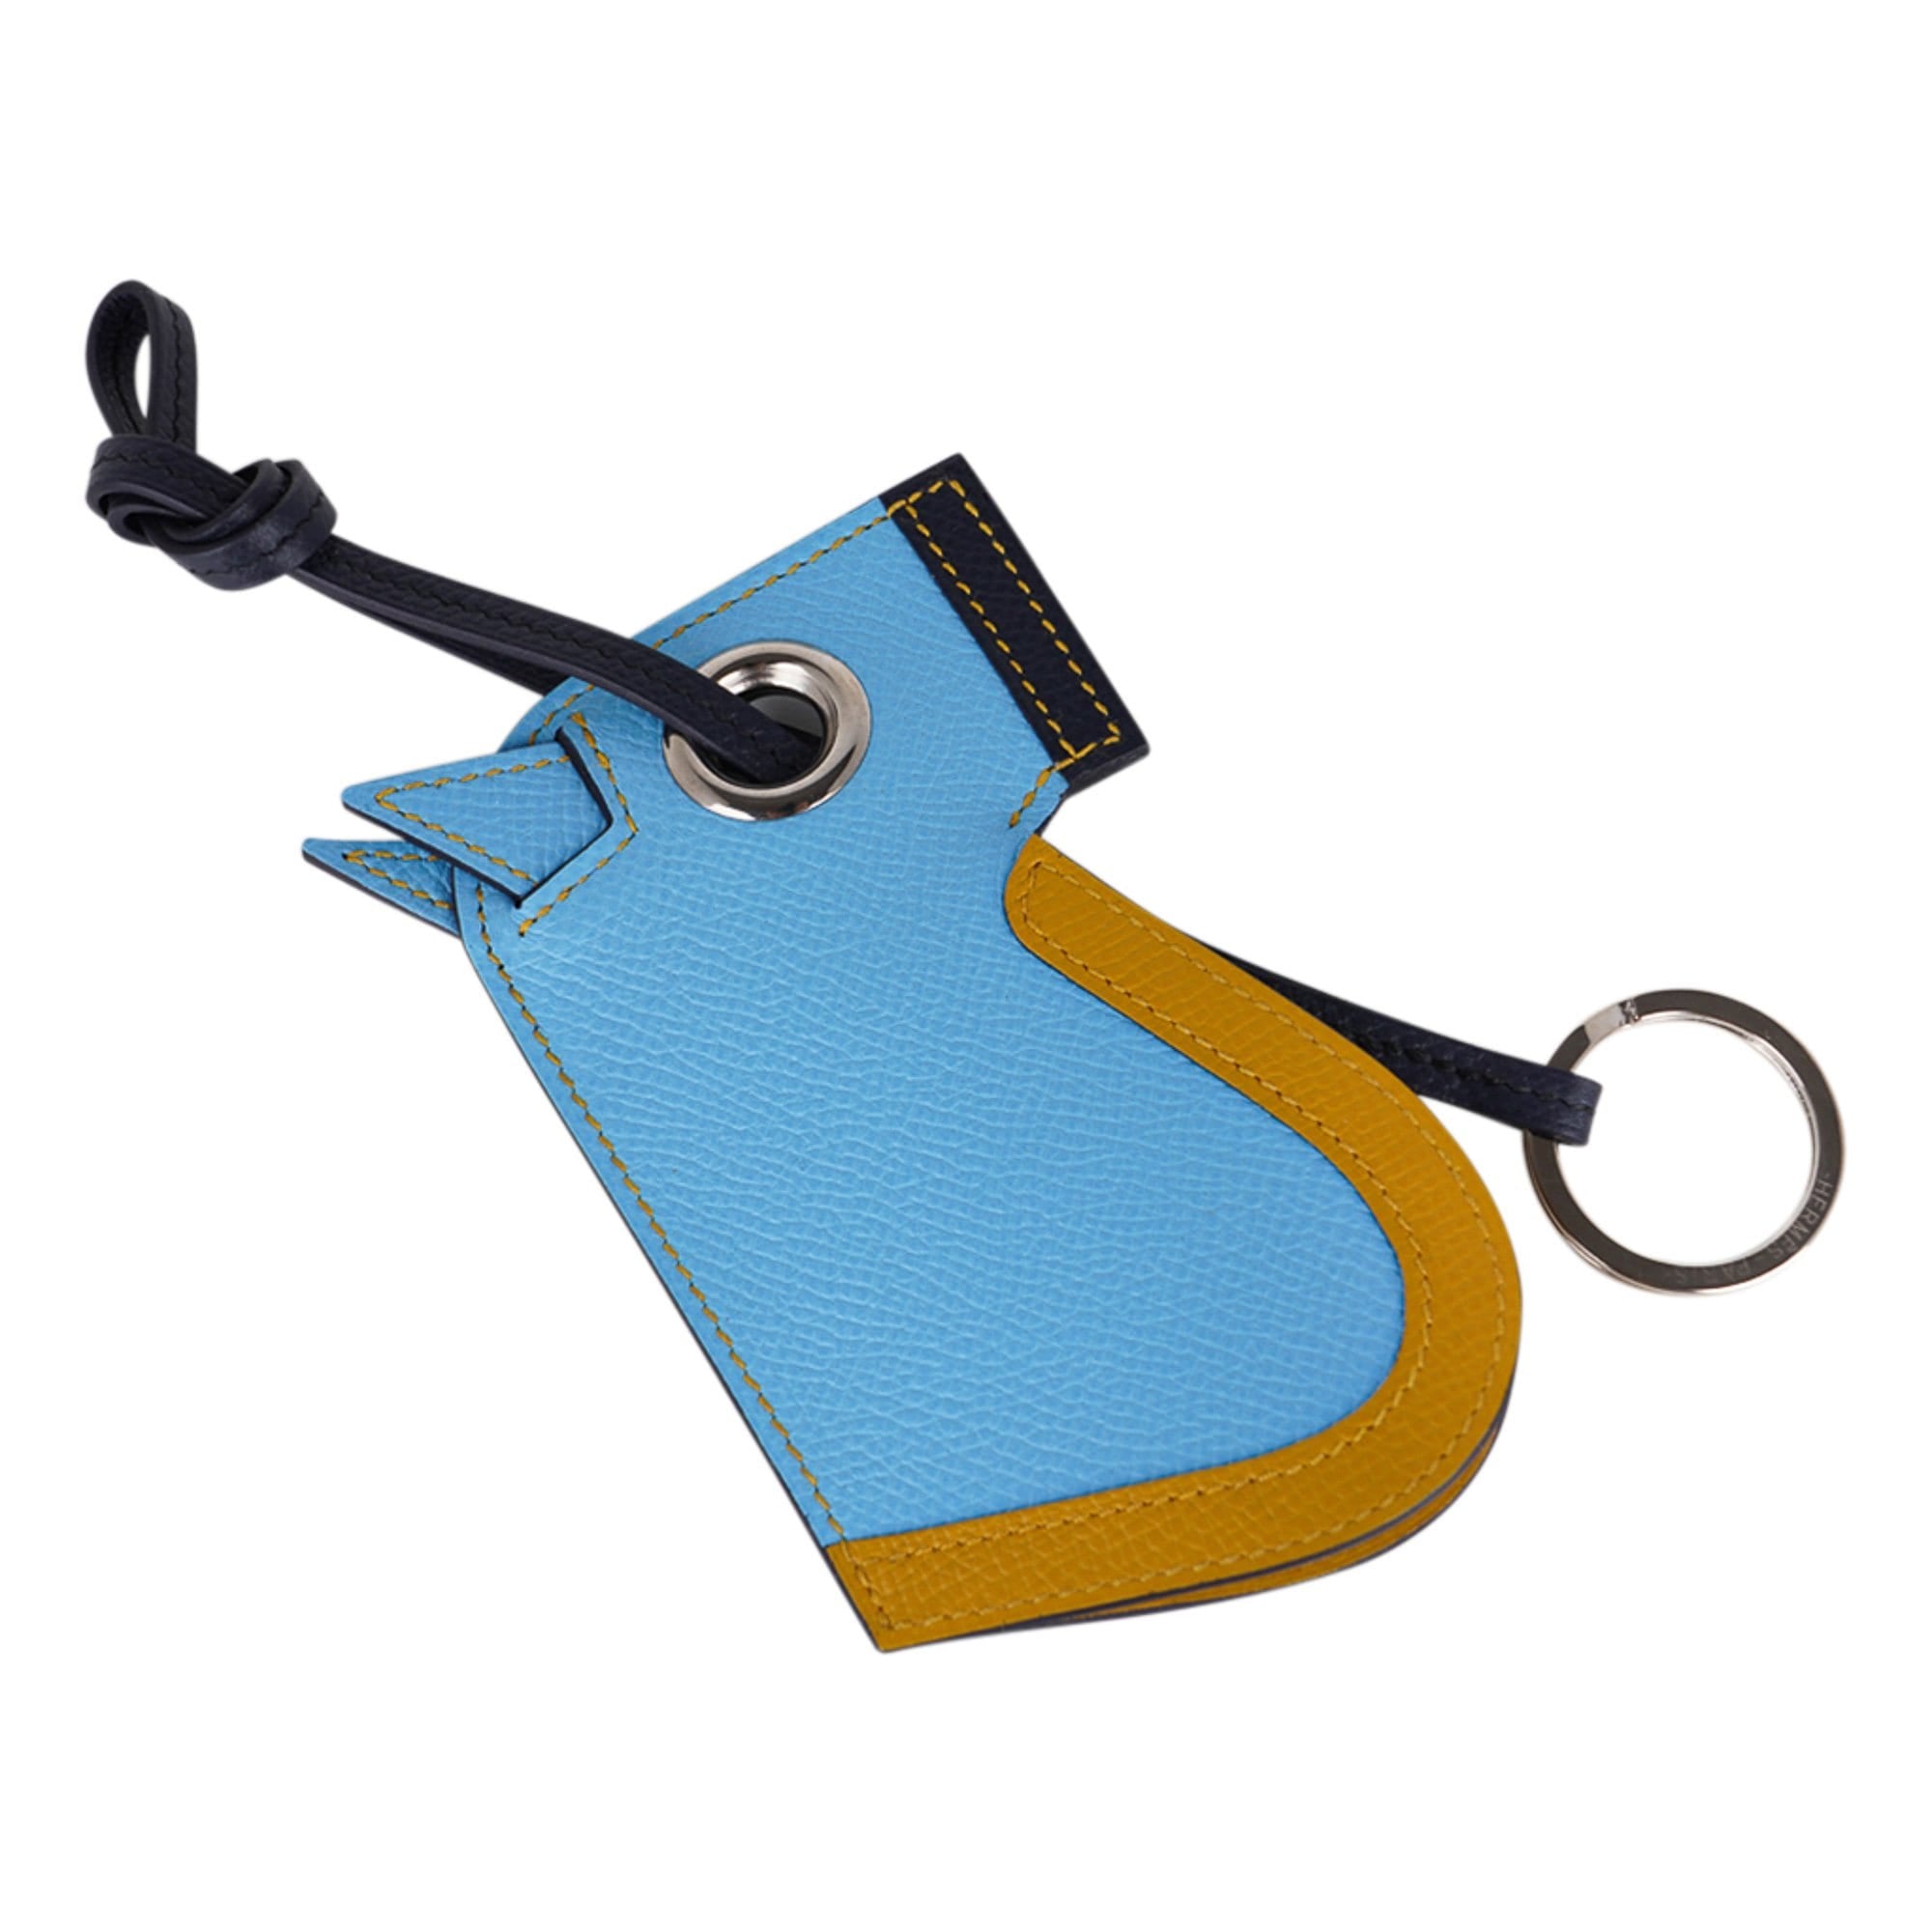 Hermes Camail Key Ring Bag Charm Bleu Celeste /Jaune Ambre/ Blue Indigo New